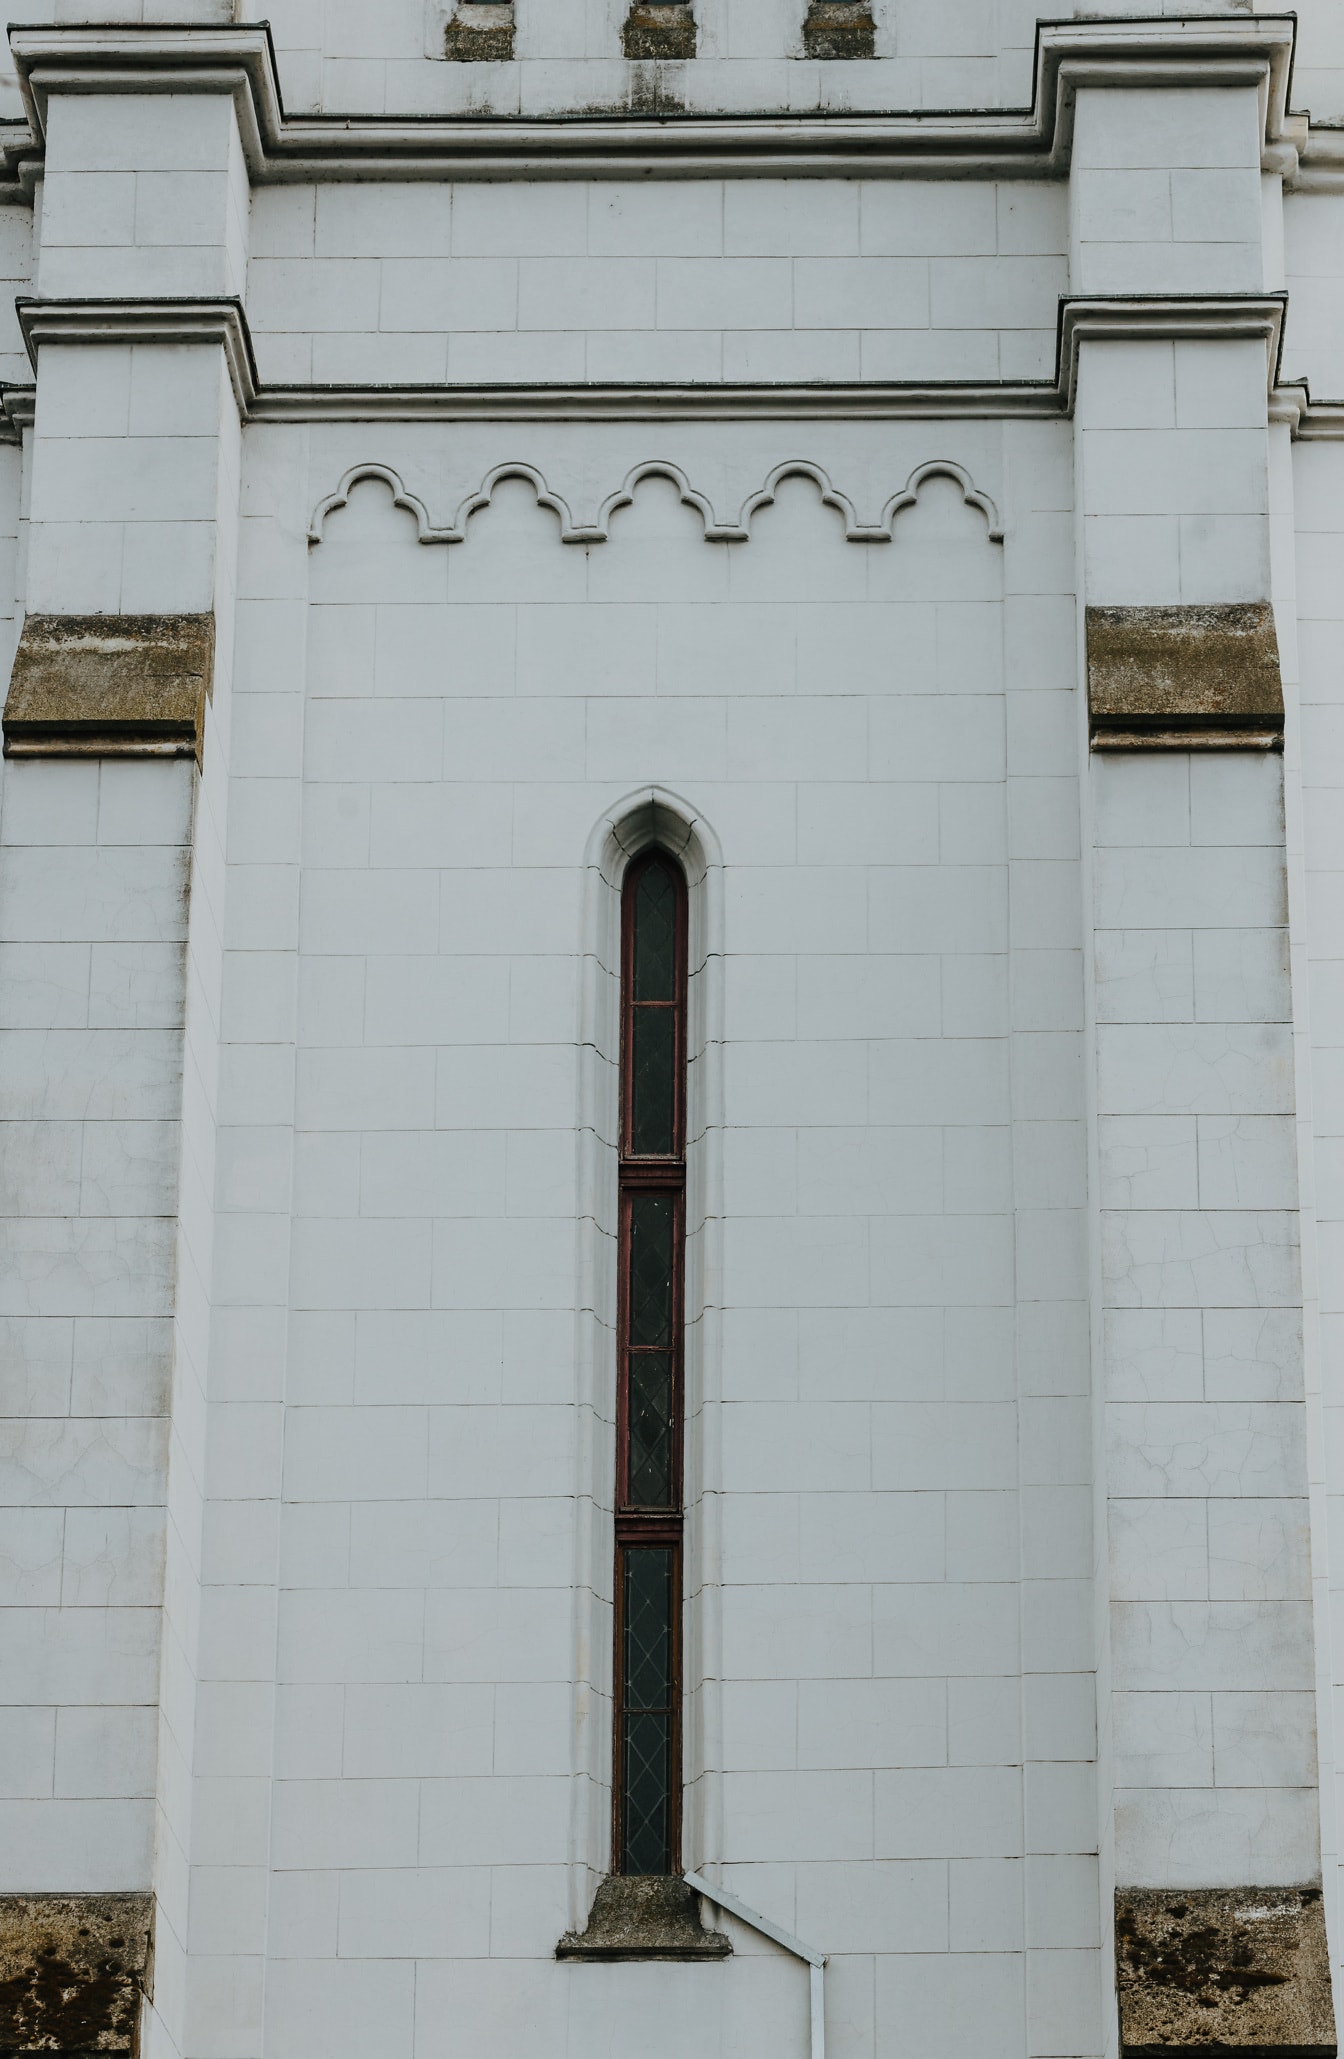 Grande fenêtre gothique étroite sur mur de marbre blanc